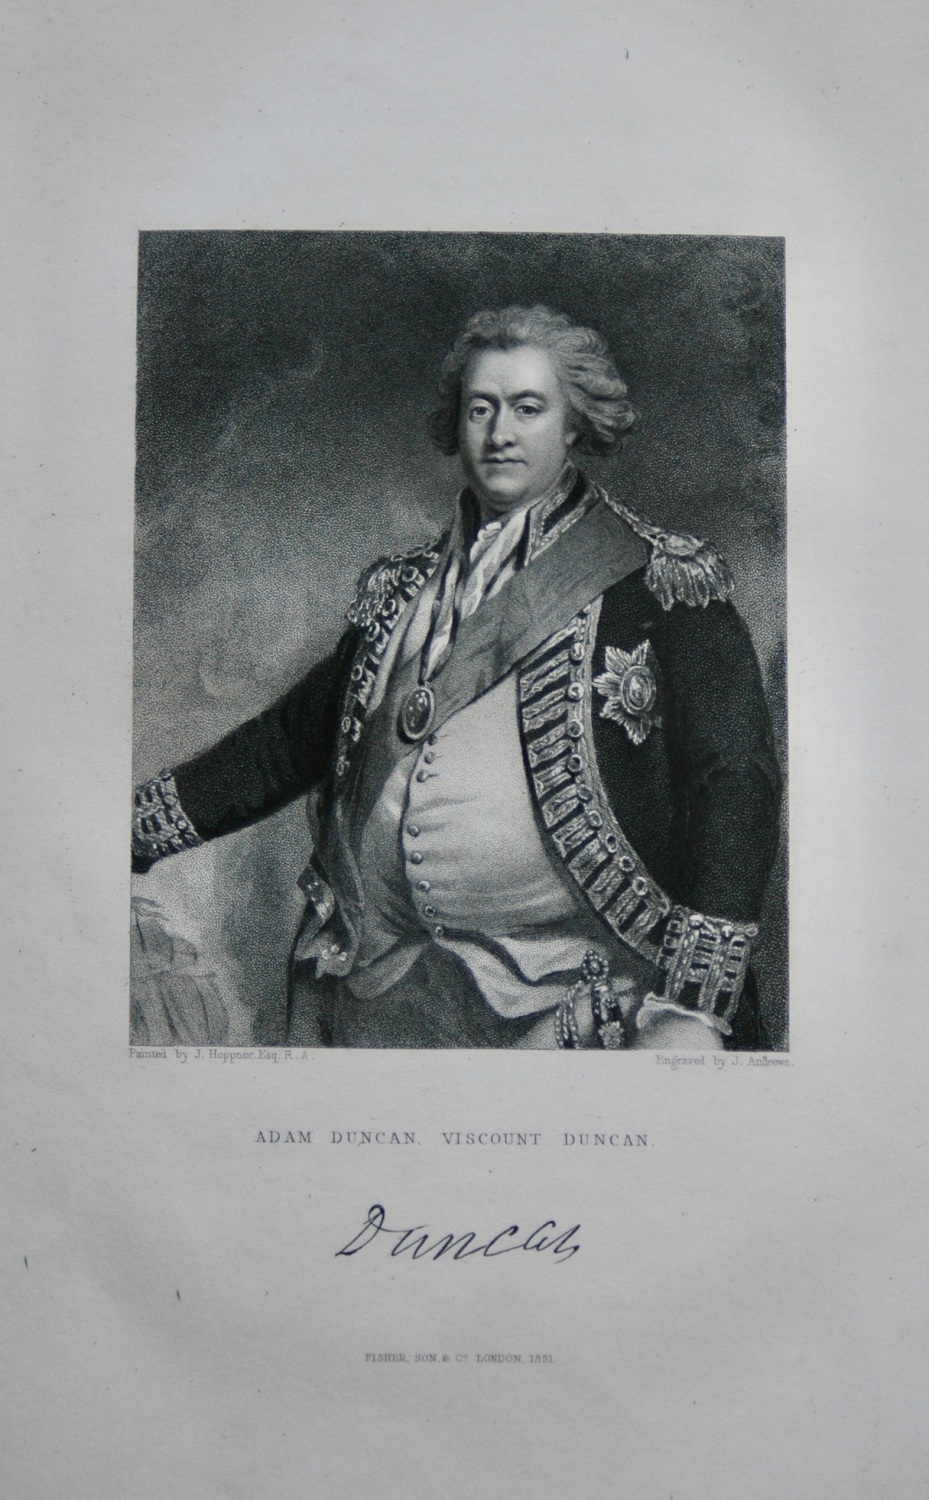 Adam Duncan.  Viscount Duncan.  1831.